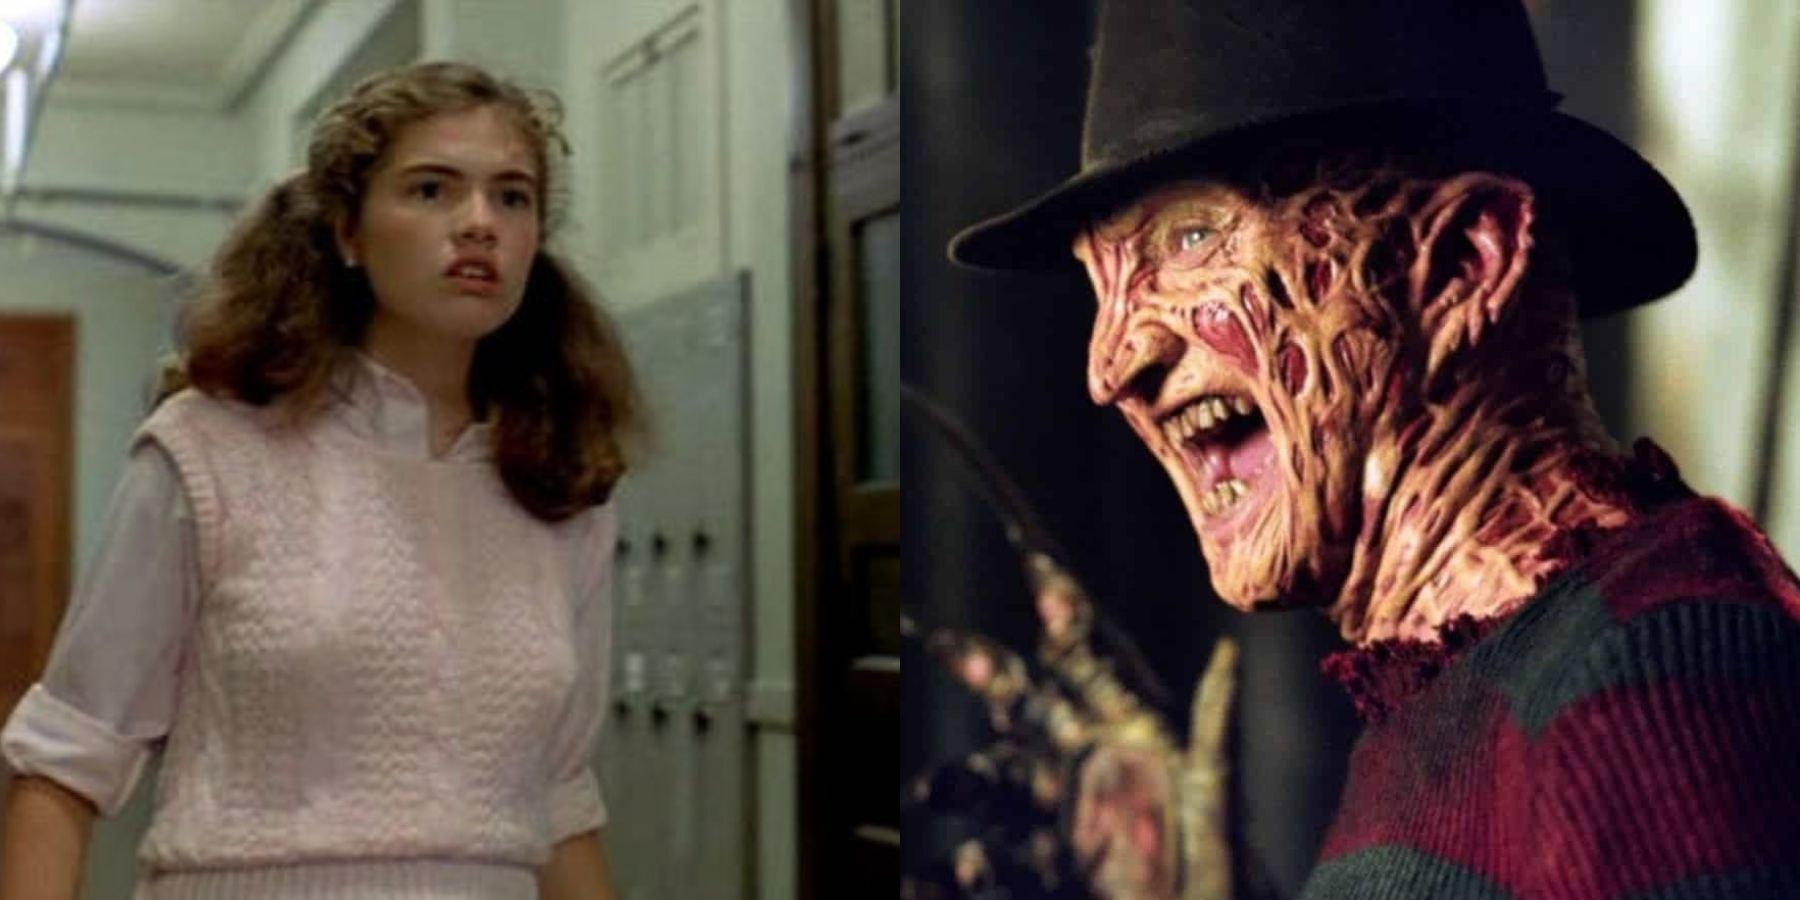 Une photo partagée par Nancy Thompson et Freddy Krueger dans A Nightmare On Elm Street